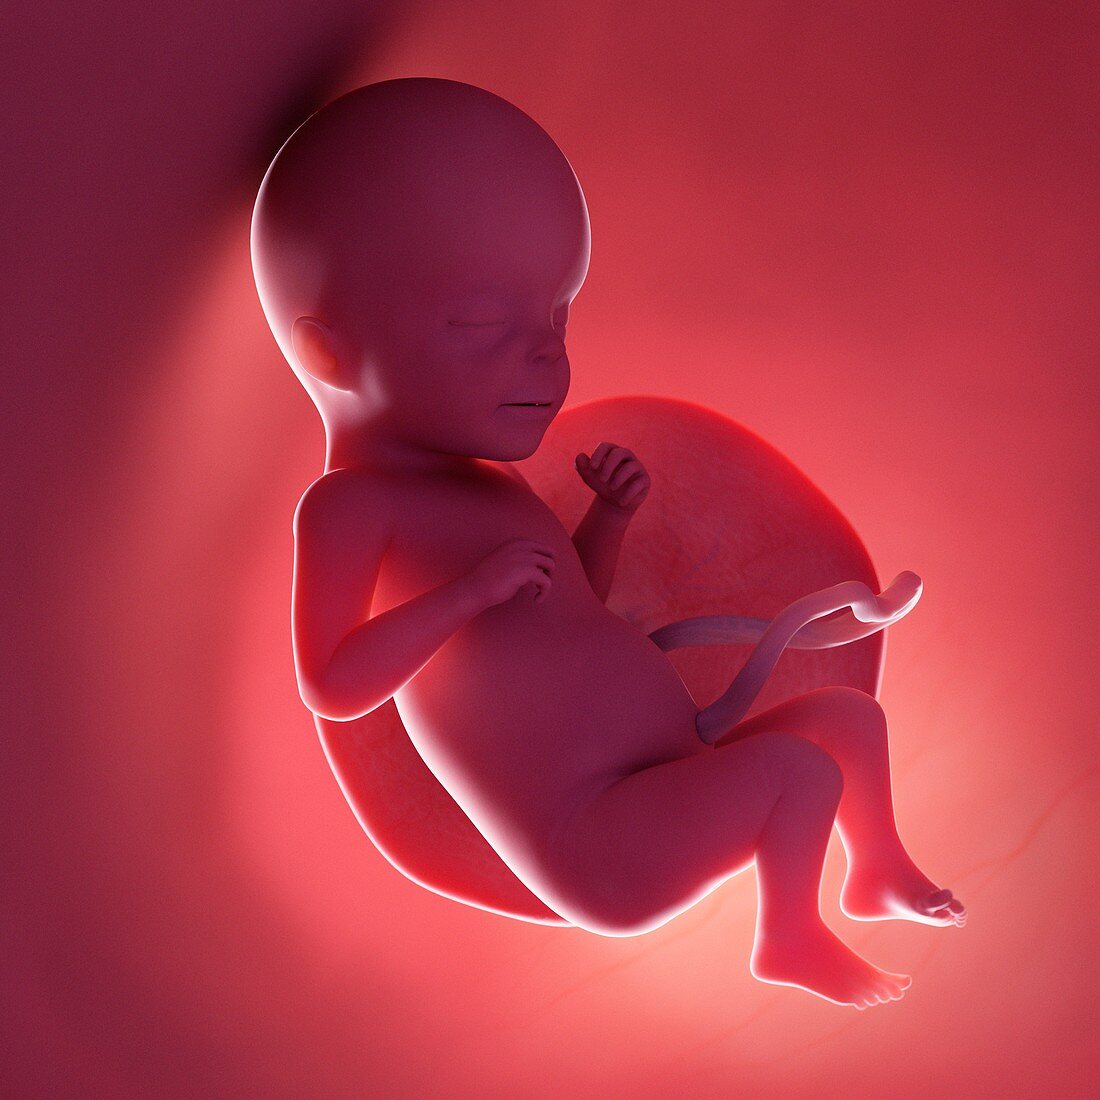 Fetus at week 26, illustration